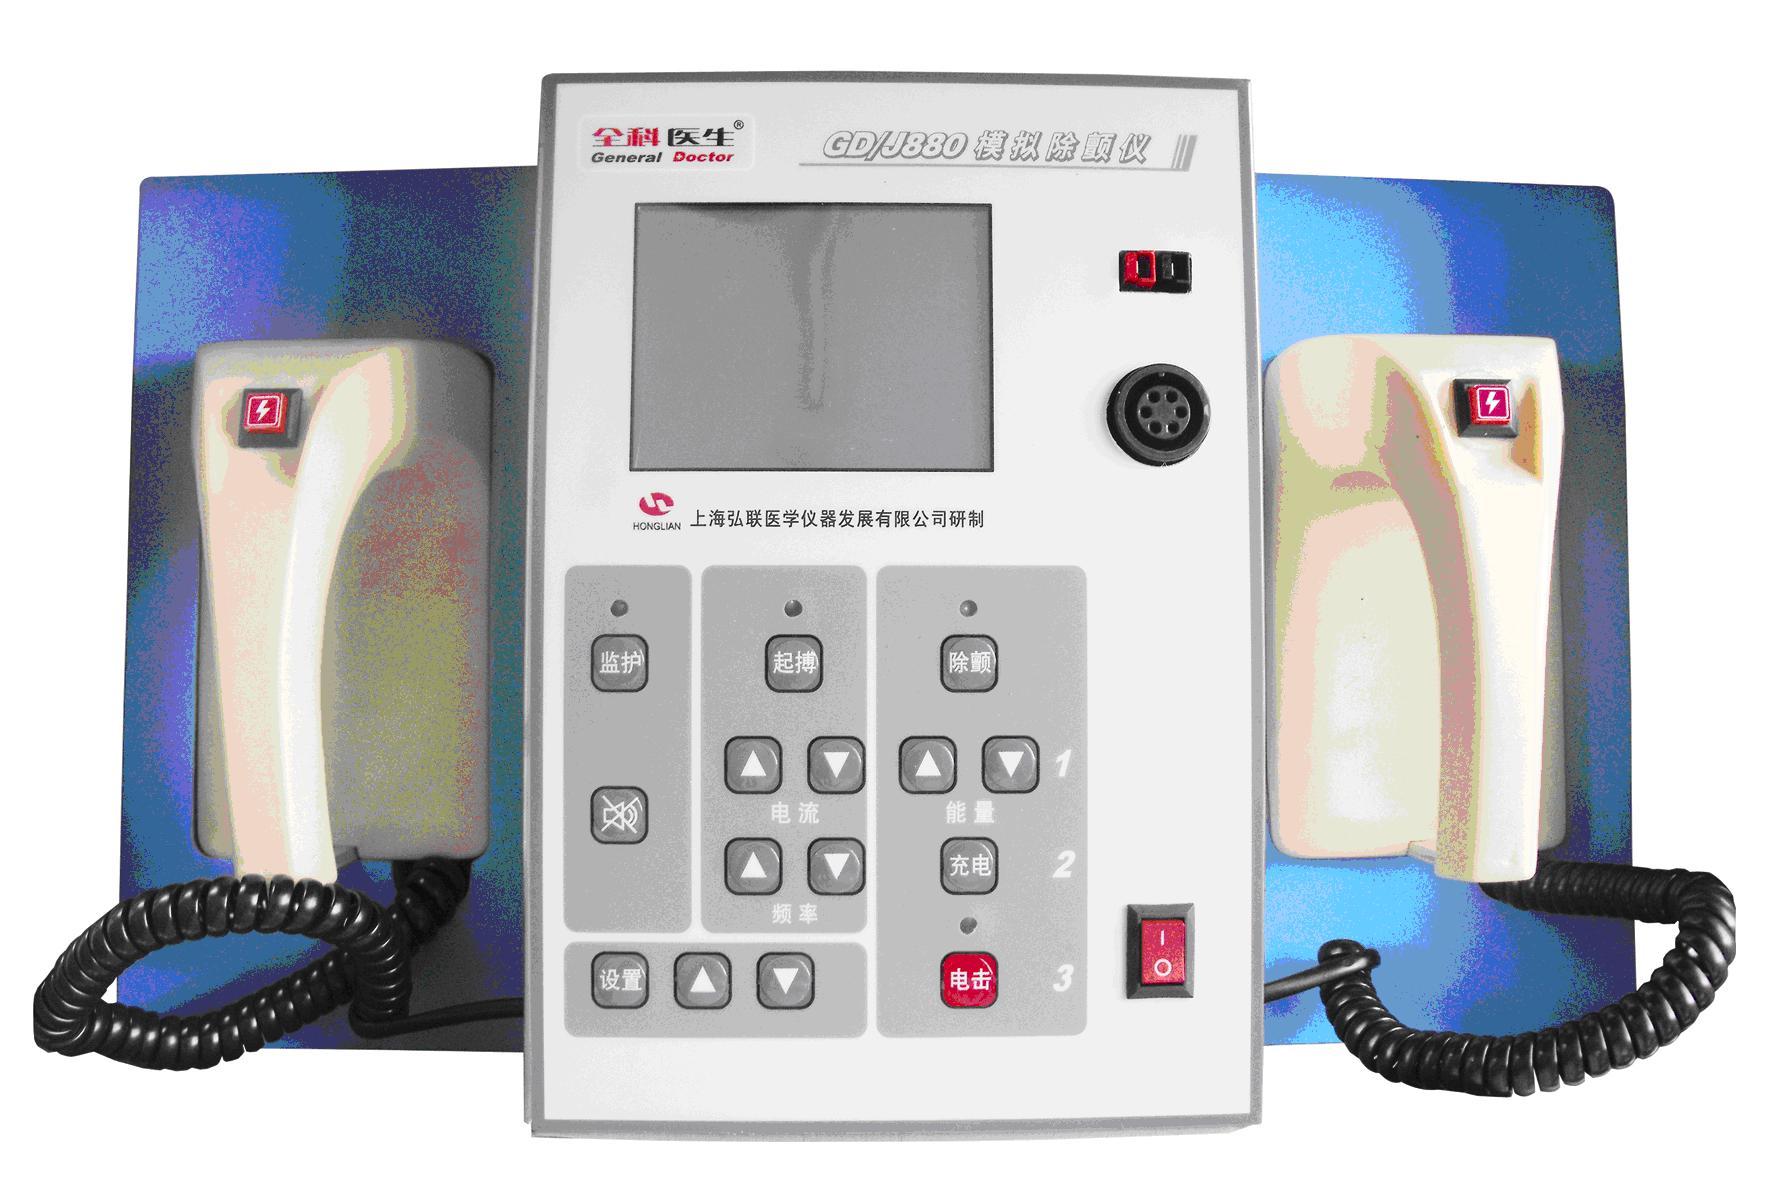 模拟心脏除颤起搏器GD/J880的液晶显示器，最大除颤能量可达360J。